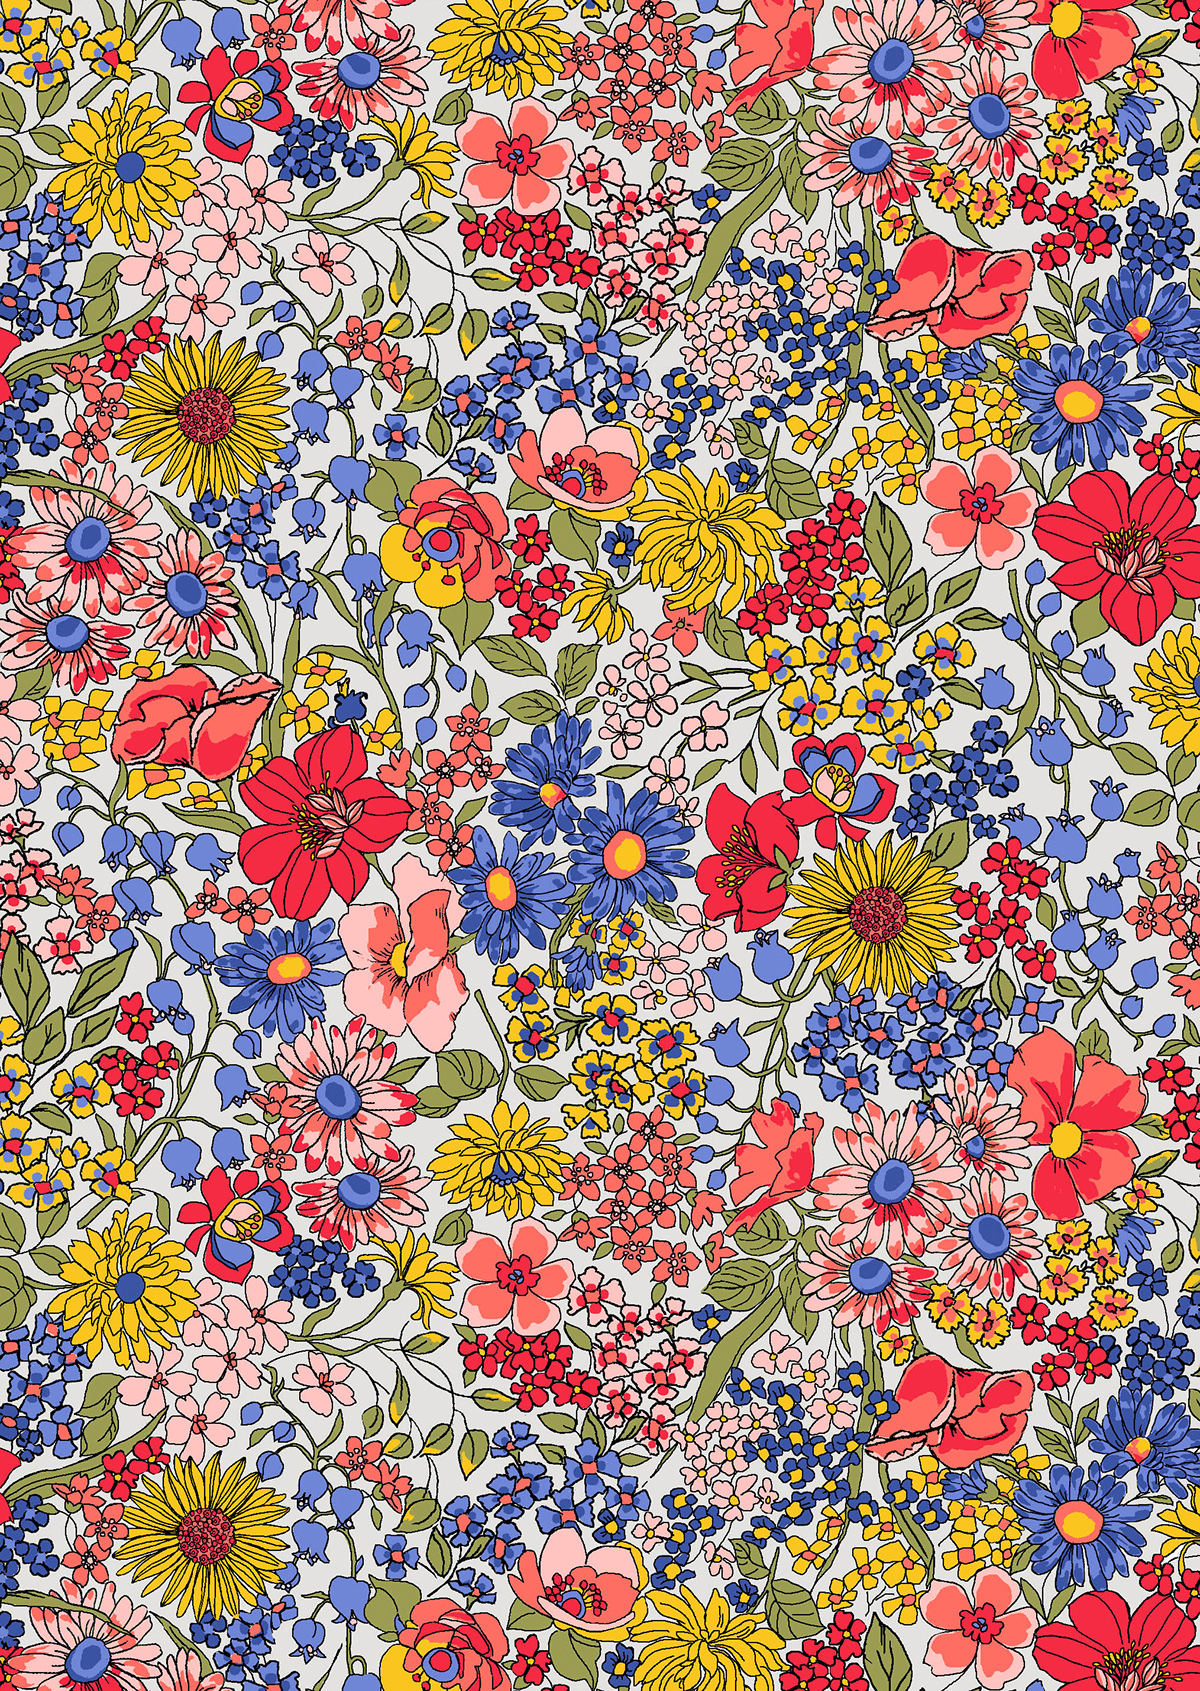 graphics tshirt allovers florals prints batik mosaic